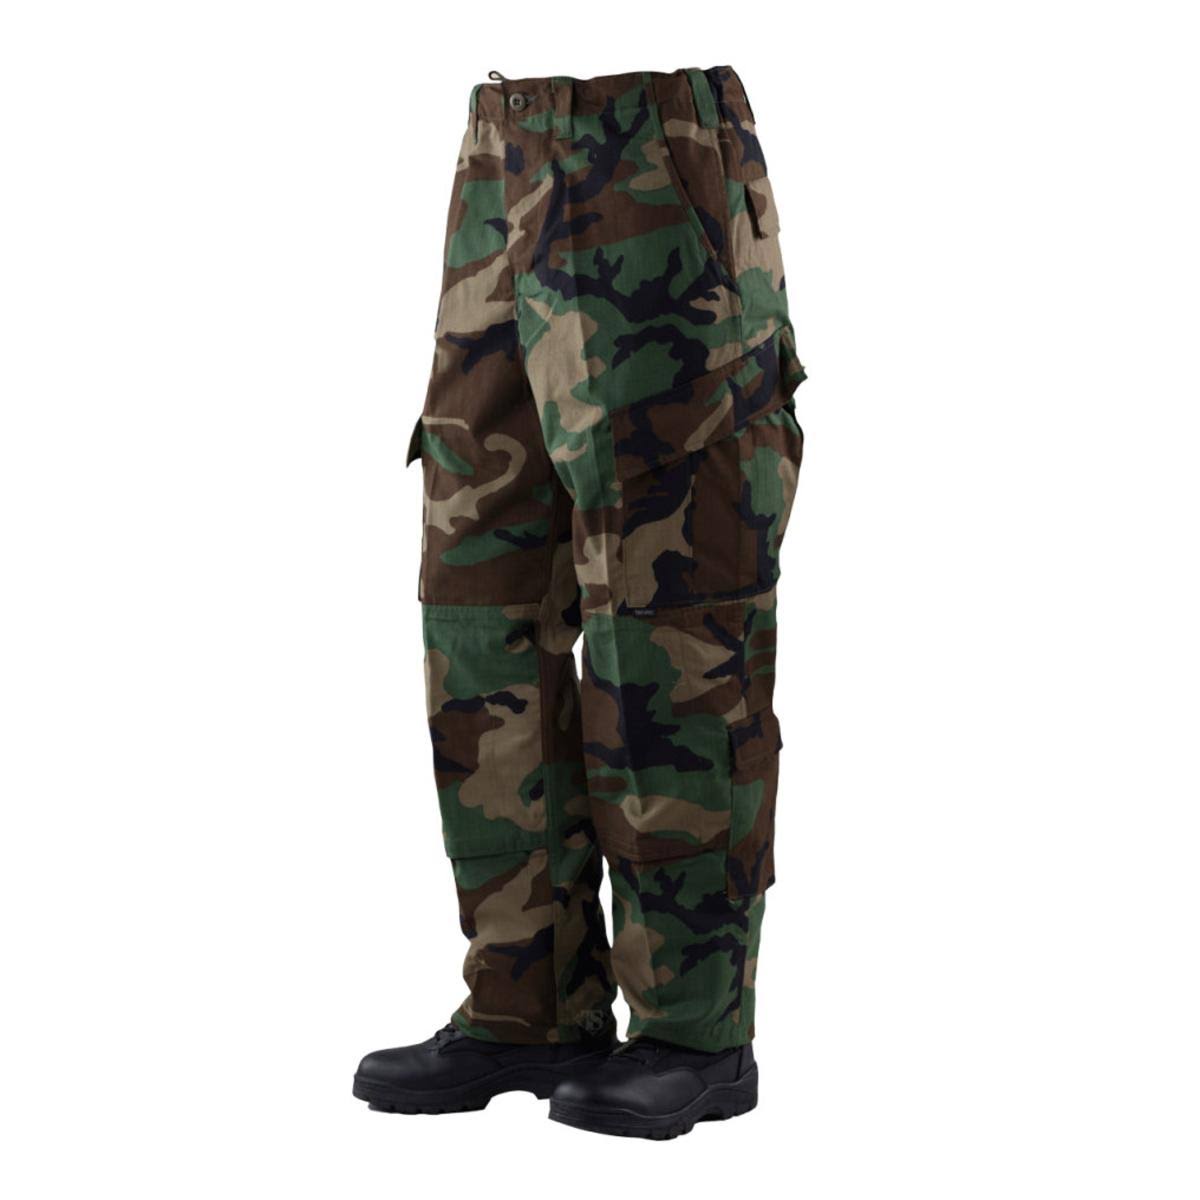 Tru-Spec 1275 Tactical Response Uniform (tru) Pants, Woodland Camo ...